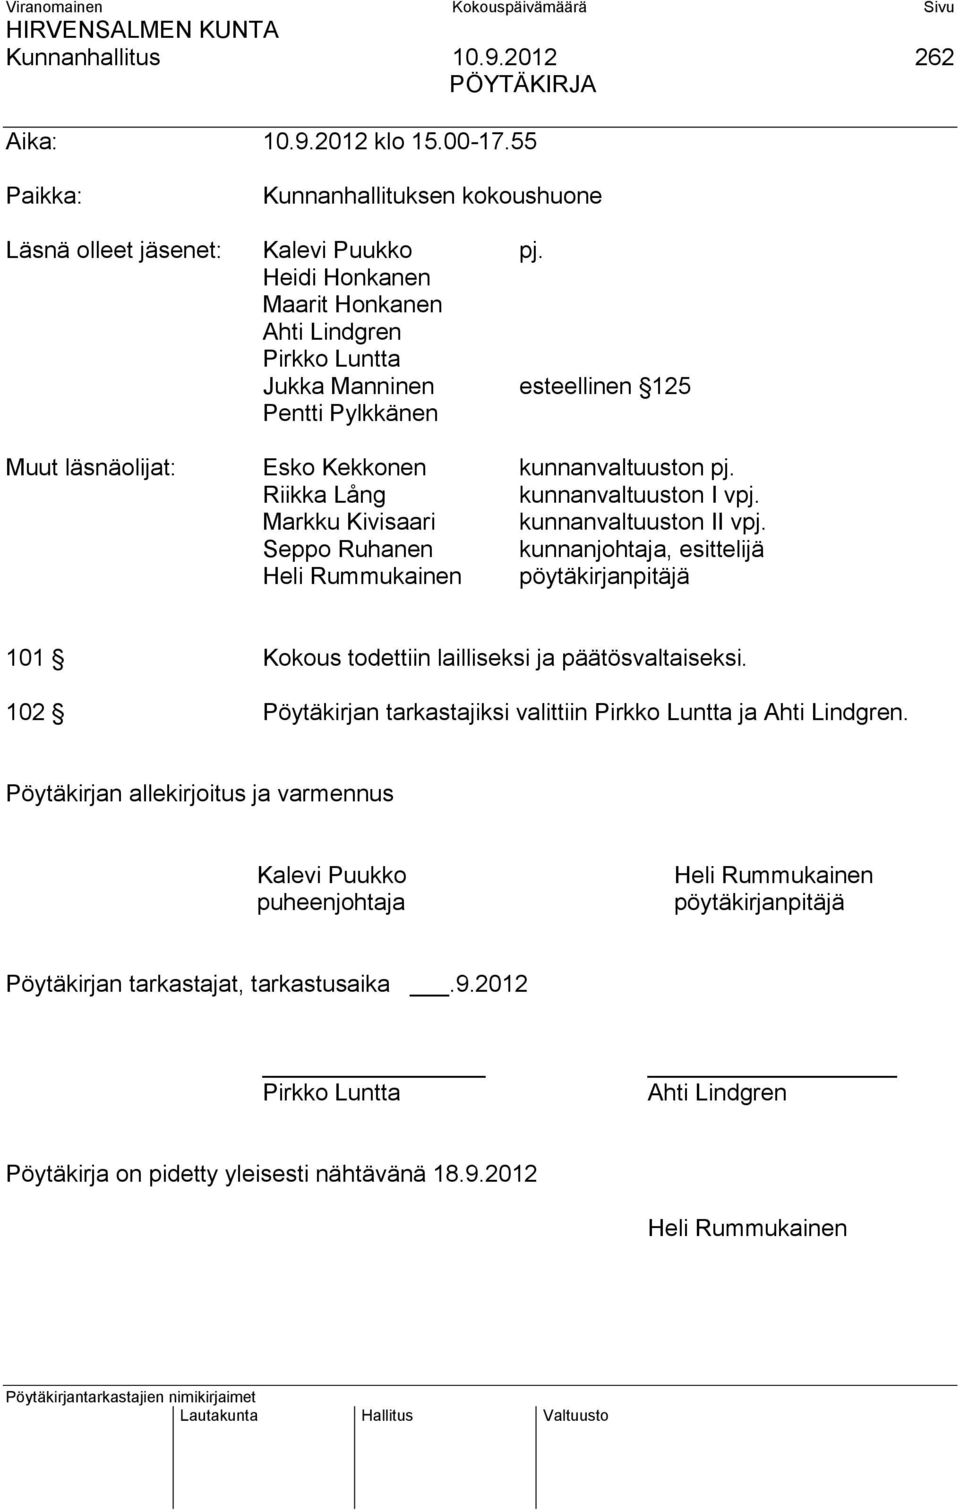 Markku Kivisaari kunnanvaltuuston II vpj. Seppo Ruhanen kunnanjohtaja, esittelijä Heli Rummukainen pöytäkirjanpitäjä 101 Kokous todettiin lailliseksi ja päätösvaltaiseksi.